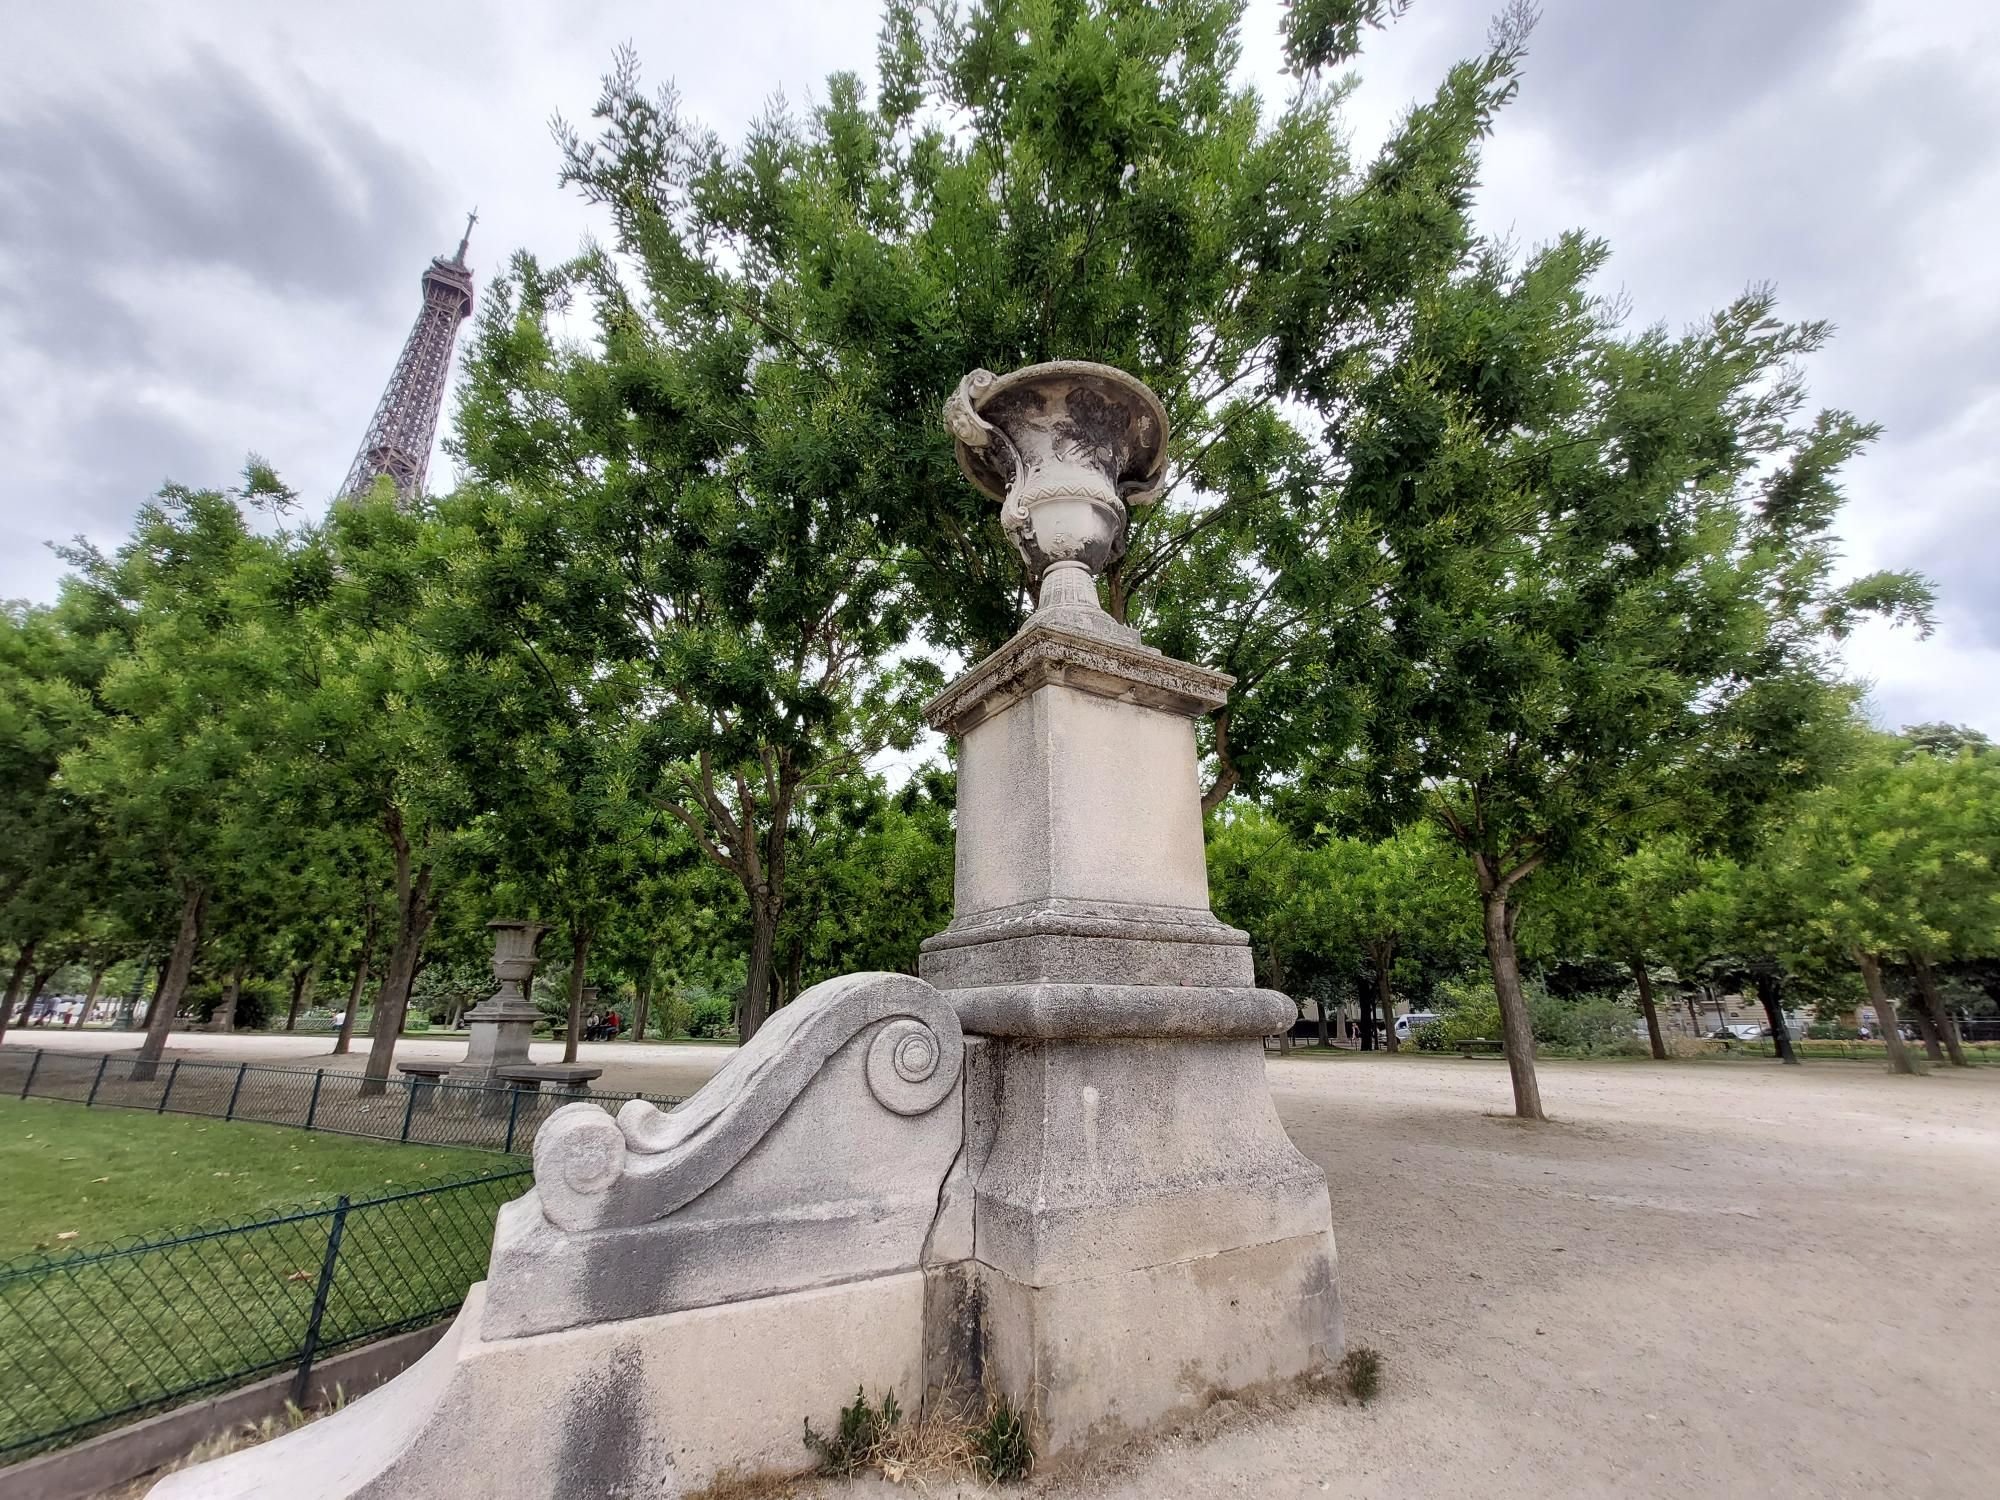 Opposés au projet du site tour Eiffel, les Amis du Champ de Mars réclament  la restauration du mobilier urbain d'époque - Le Parisien